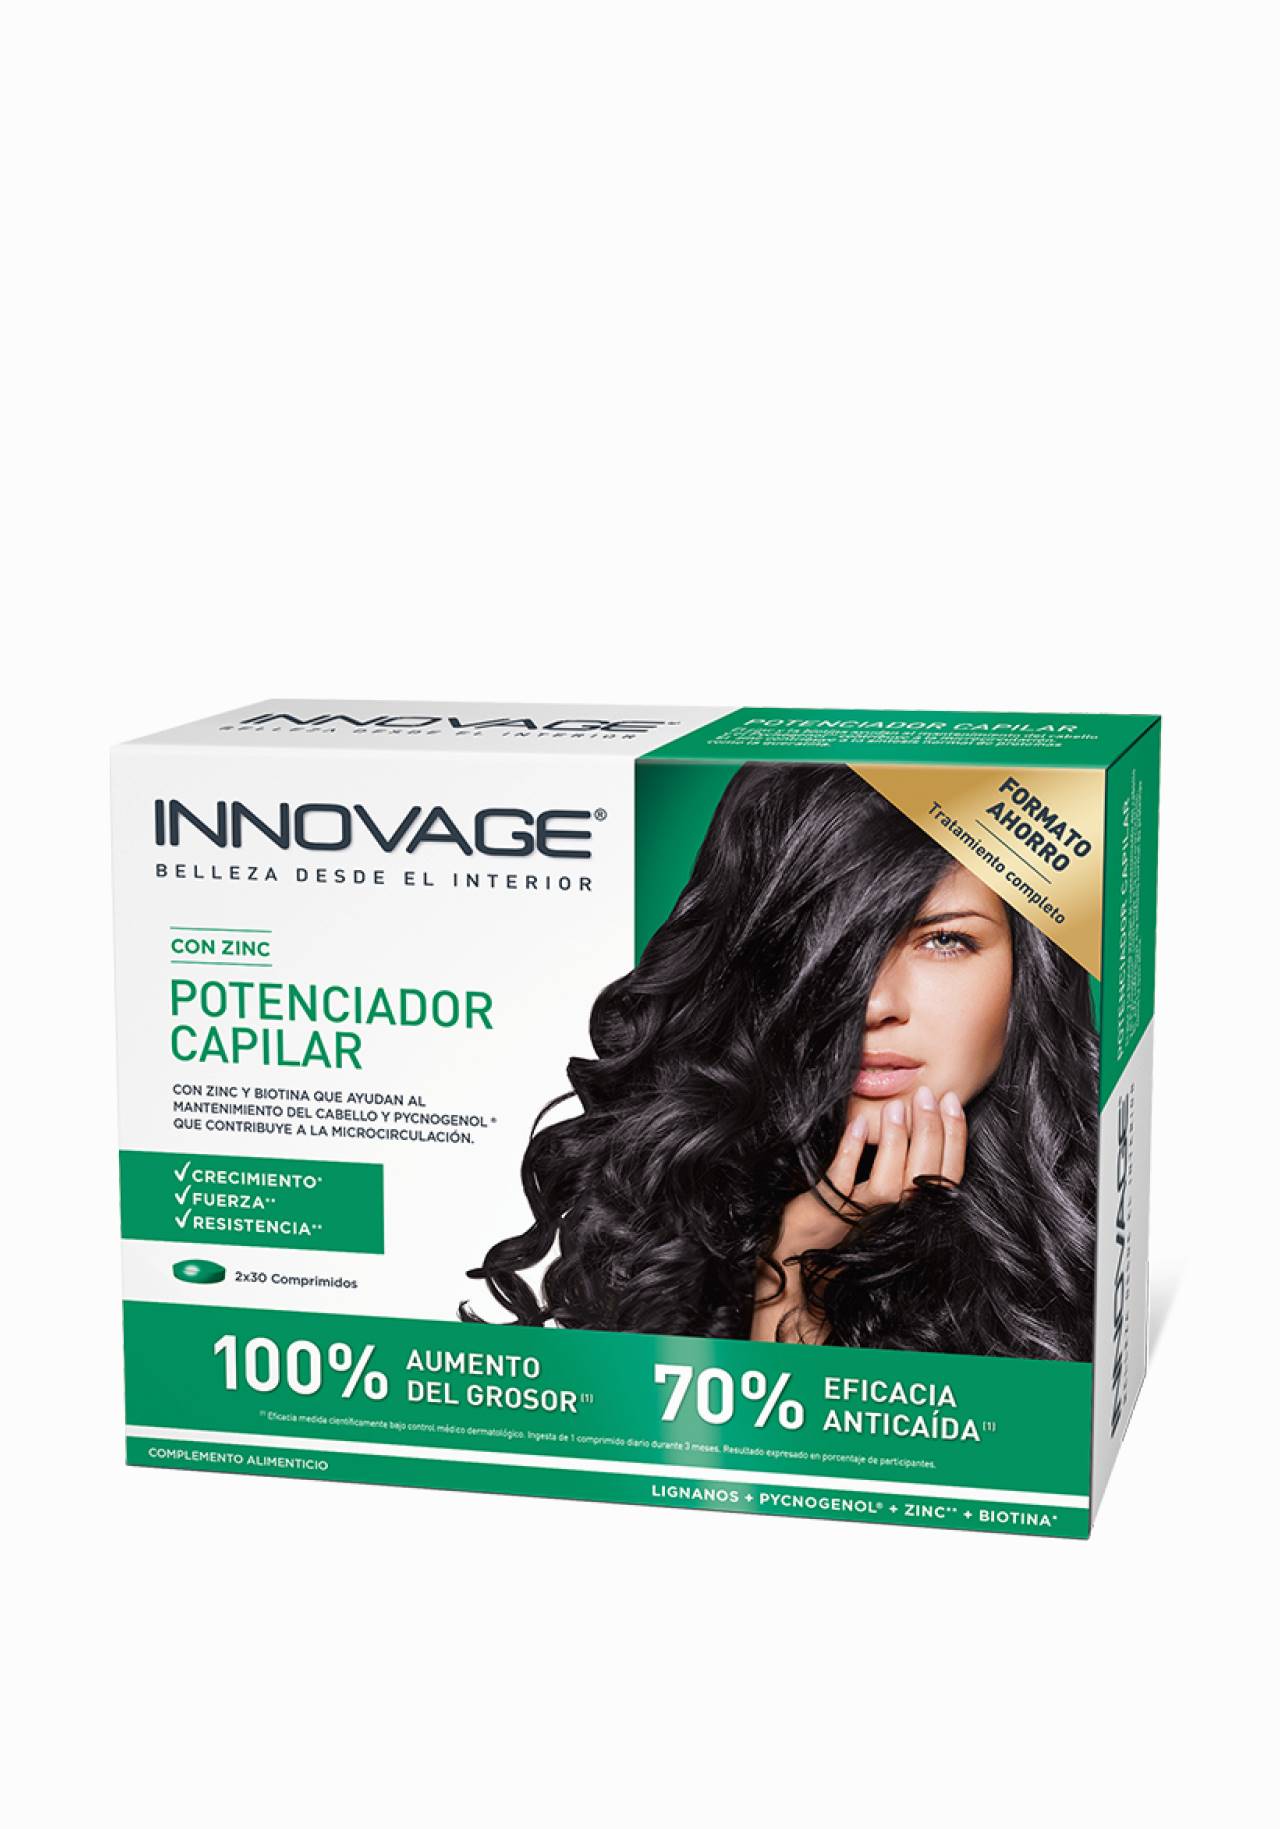 Complemento alimenticio Innovage Potenciador Capilar Vitaminas para el pelo.